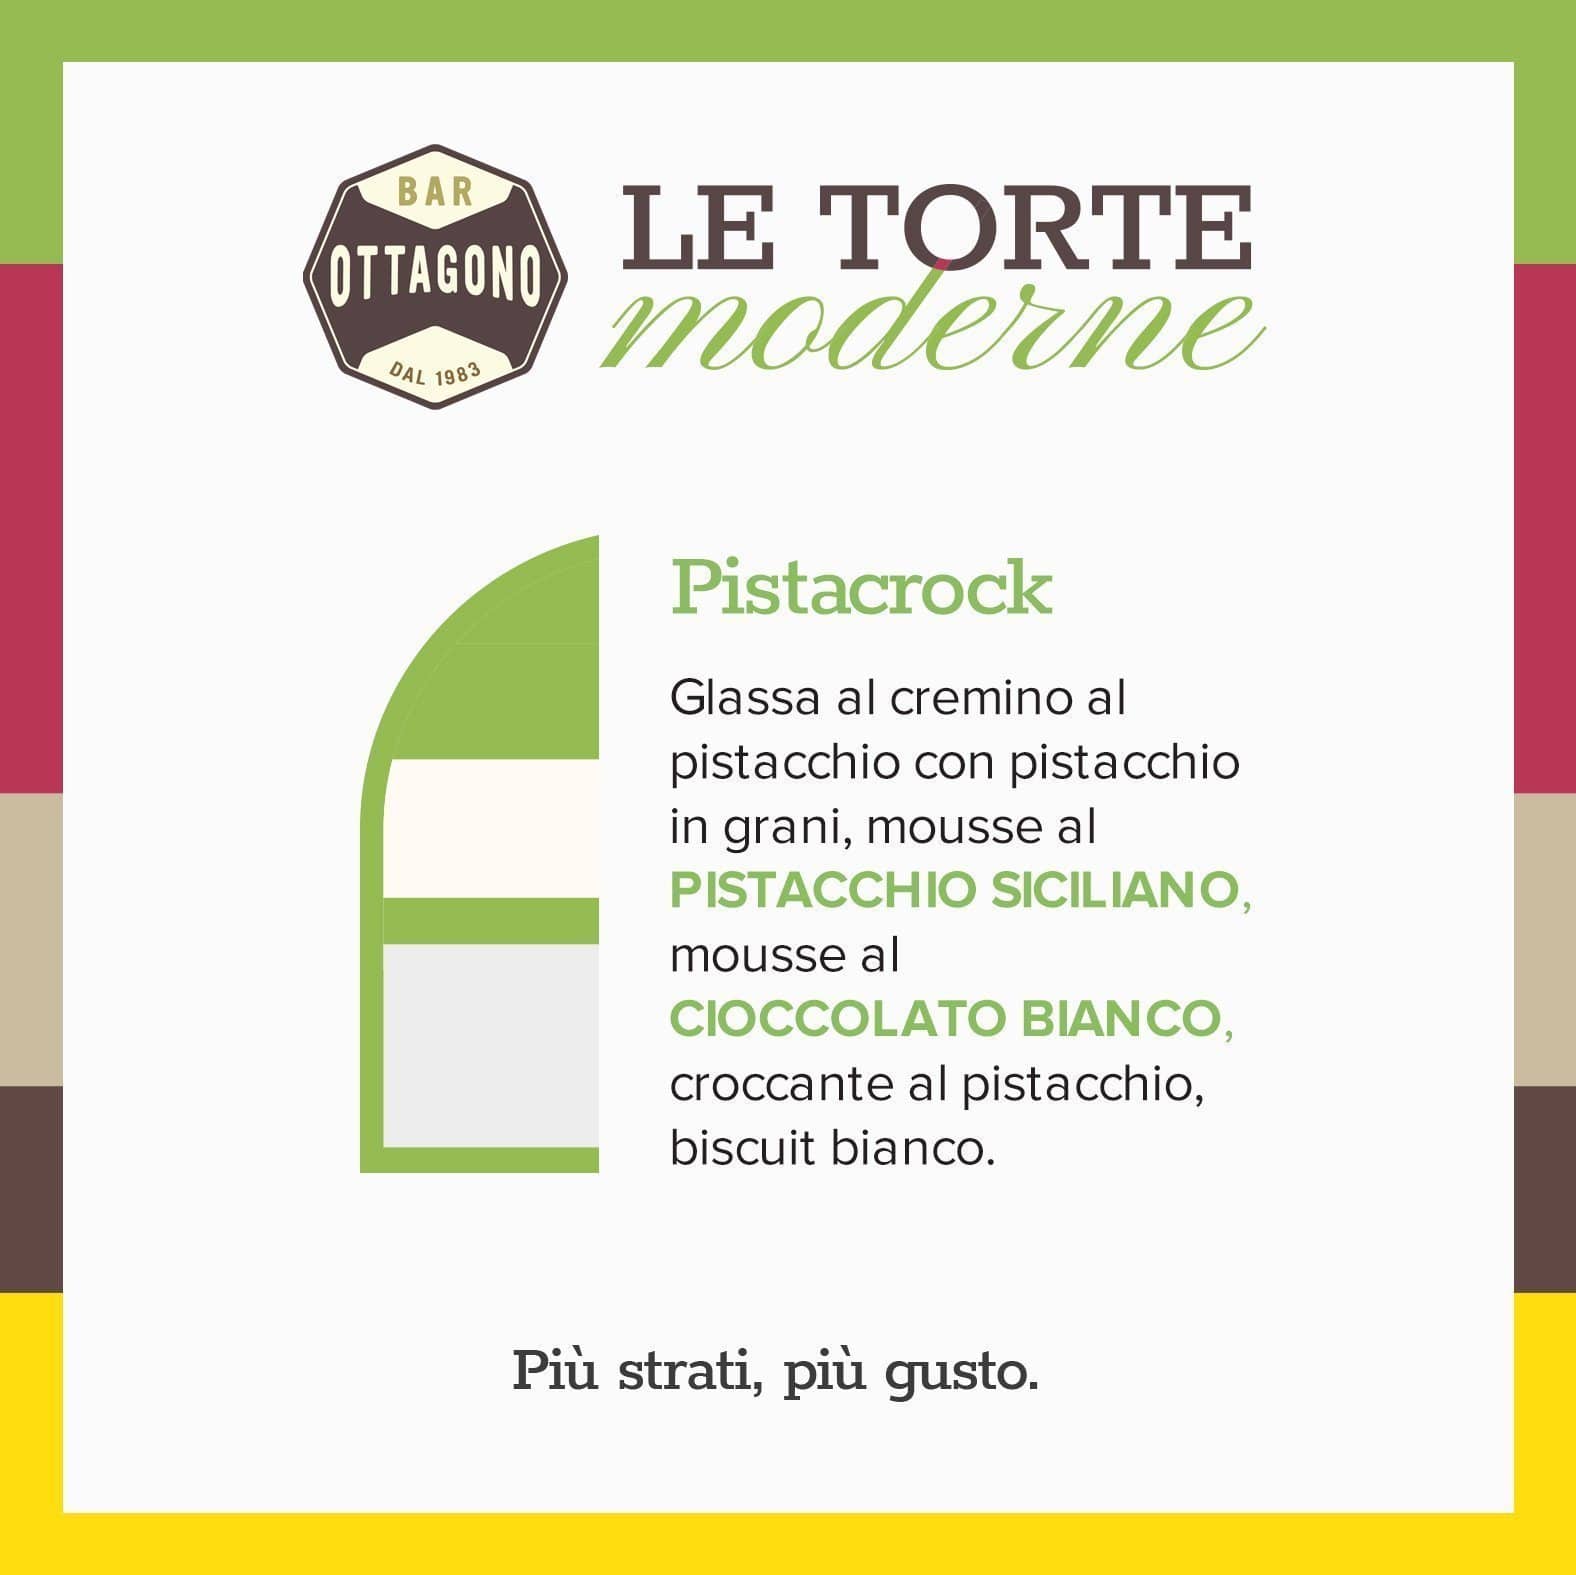 PISTACROCK - Mousse al pistacchio siciliano & Cioccolato bianco - Ottagono - Pasticceria dal 1983 - Torte in Pasticceria Moderna - sicilia - catania - online